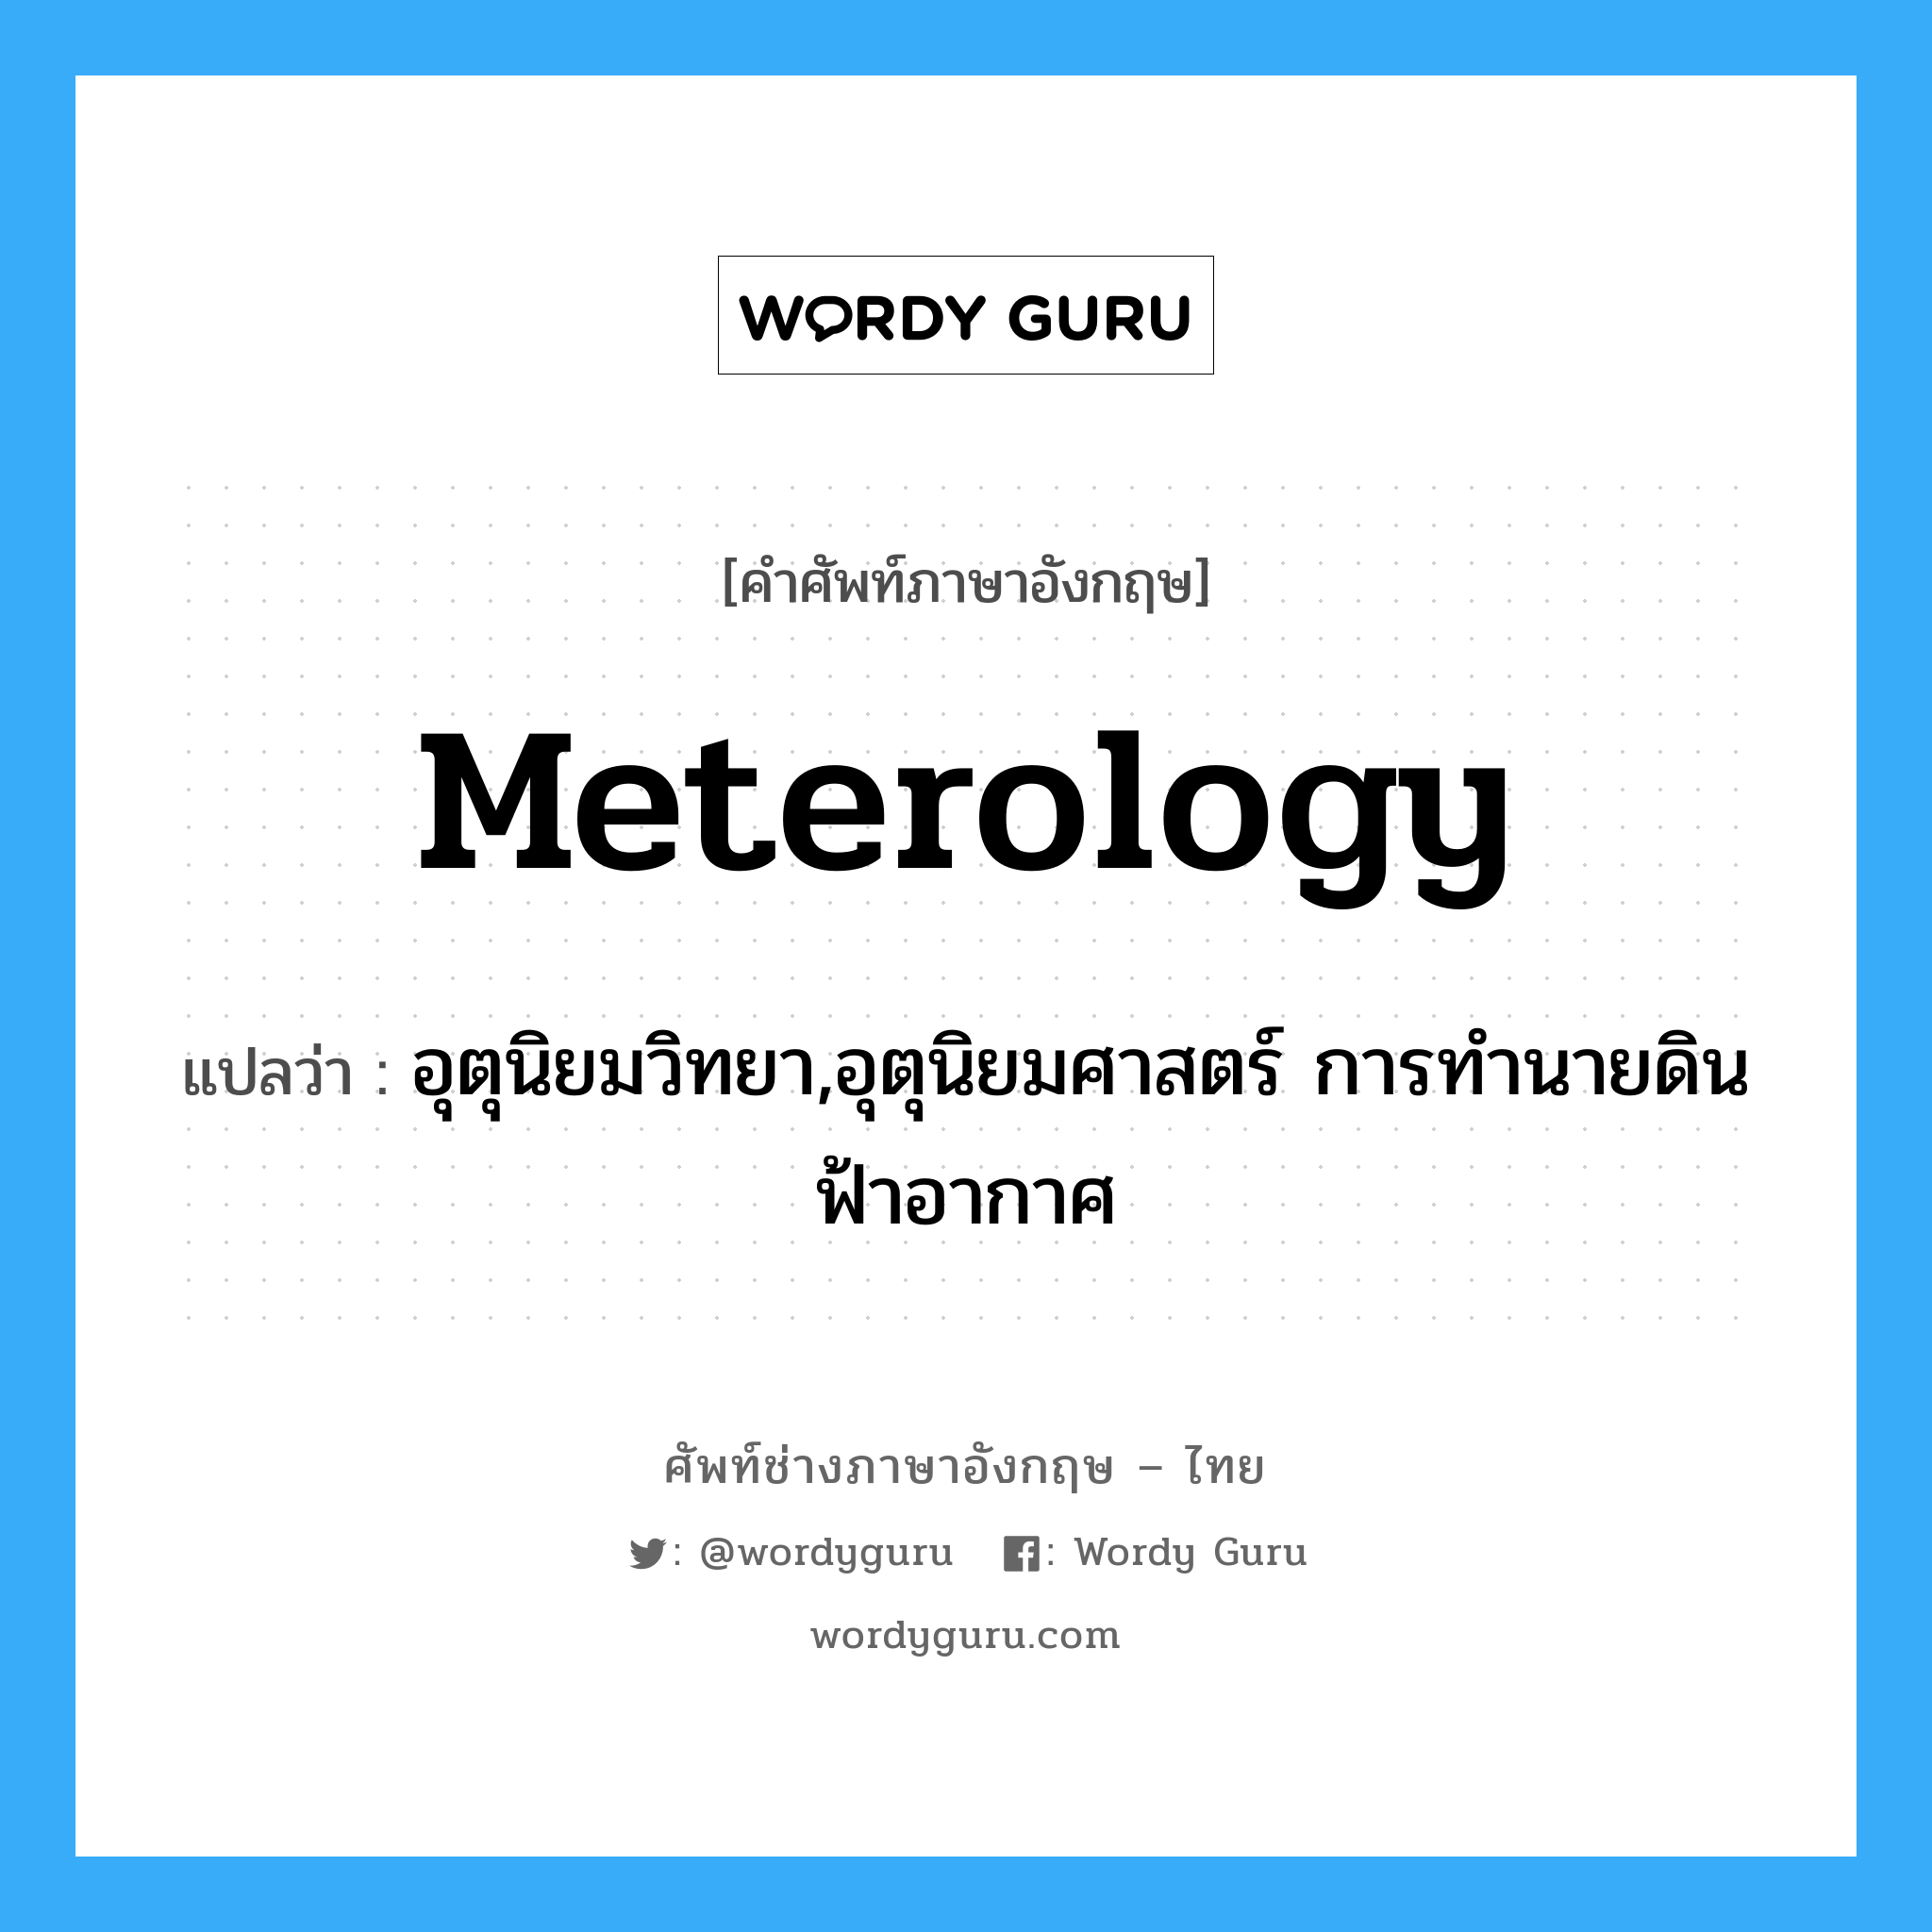 meterology แปลว่า?, คำศัพท์ช่างภาษาอังกฤษ - ไทย meterology คำศัพท์ภาษาอังกฤษ meterology แปลว่า อุตุนิยมวิทยา,อุตุนิยมศาสตร์ การทำนายดินฟ้าอากาศ